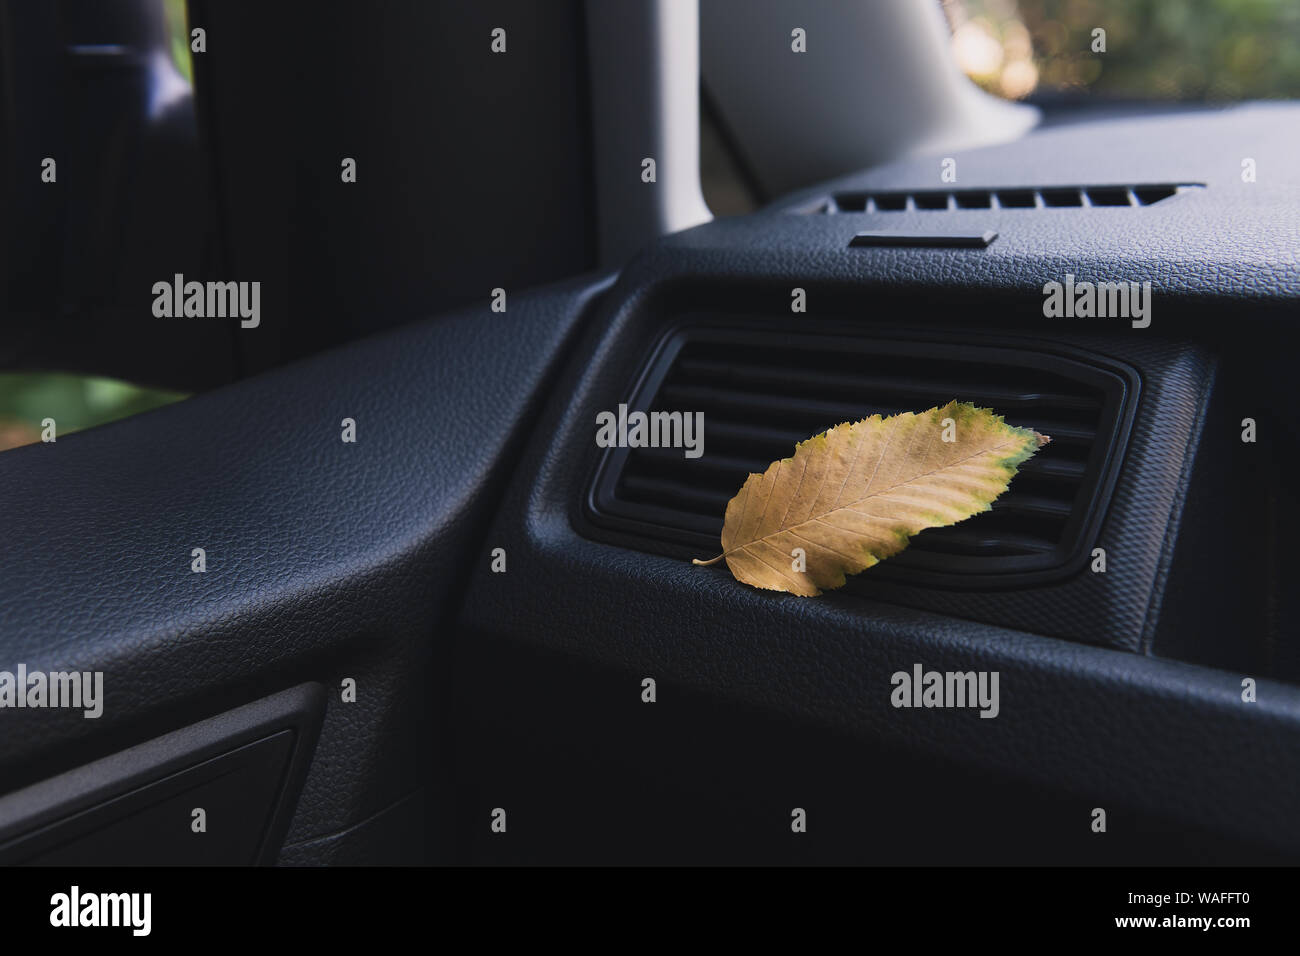 Une petite feuille d'or volé dans la voiture. Feuille jaune allongé sur le système de ventilation à l'intérieur de la voiture. Concept d'automne. Banque D'Images